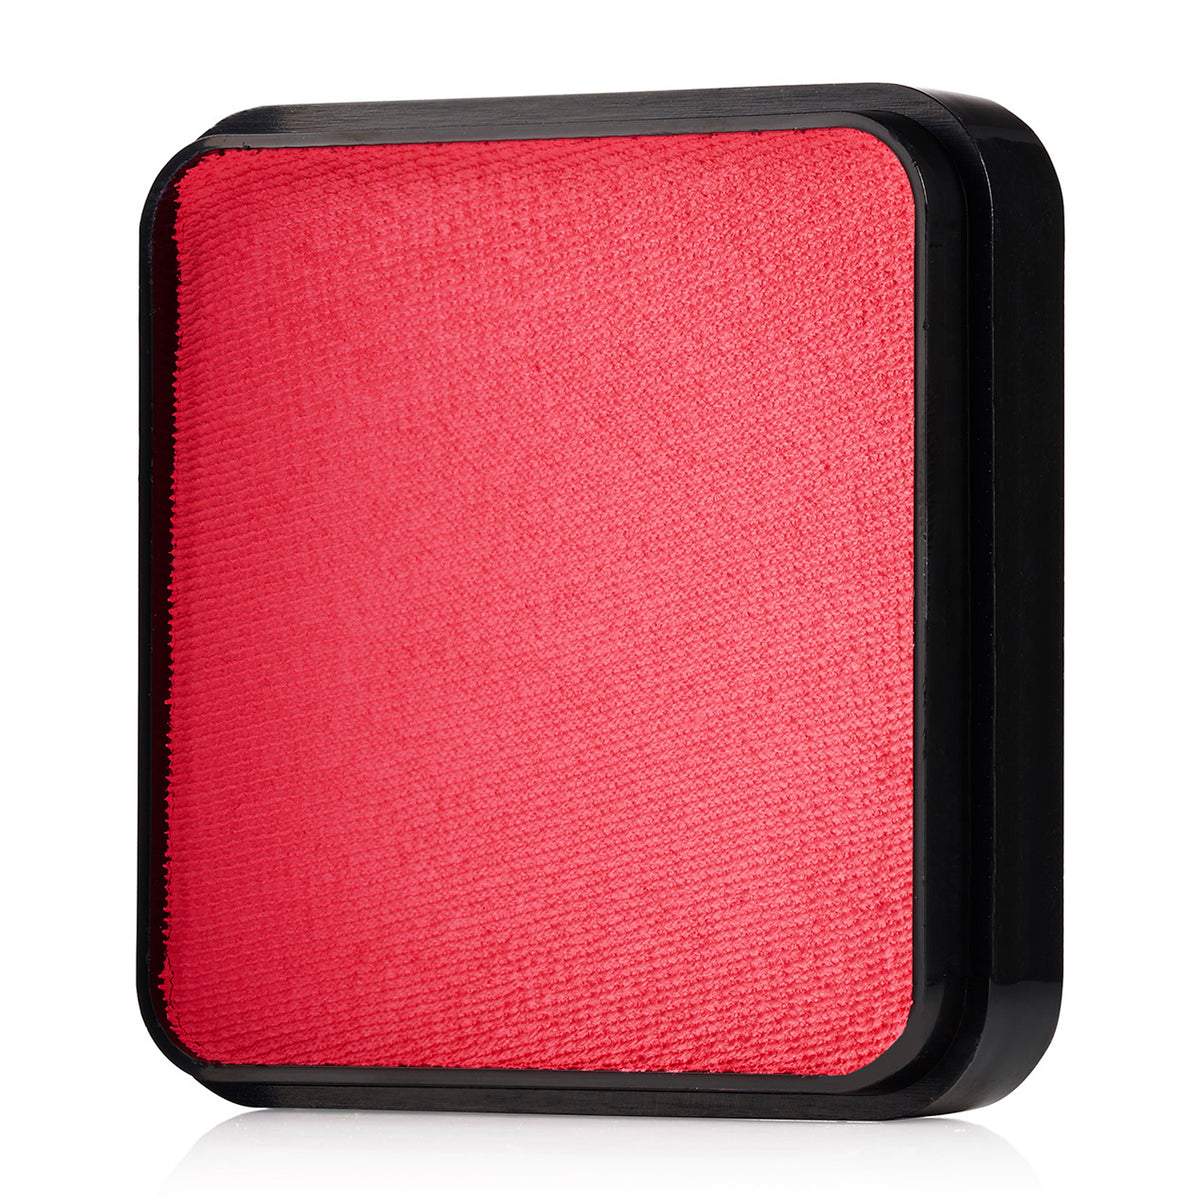 Kraze FX Face Paint - Coral Pink (25 gm)